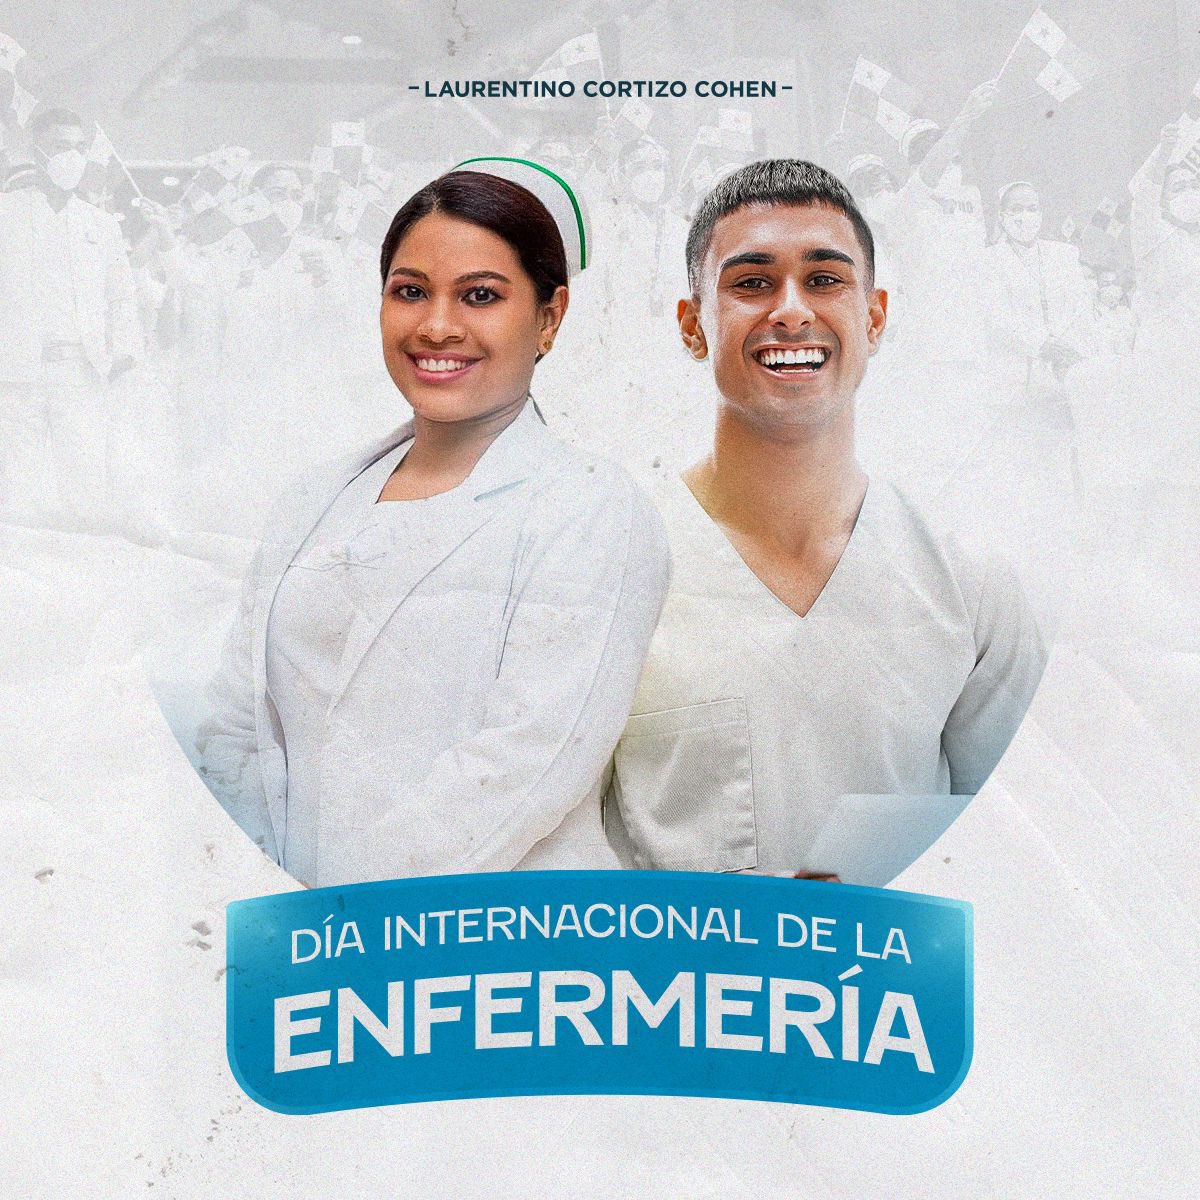 A todas las enfermeras y enfermeros de Panamá, ¡GRACIAS! Su entrega diaria y dedicación son invaluables para cuidar a otros. Son nuestros verdaderos 'Ángeles de Blanco', inspirando solidaridad y amor con cada acto. #DíaDeLaEnfermería